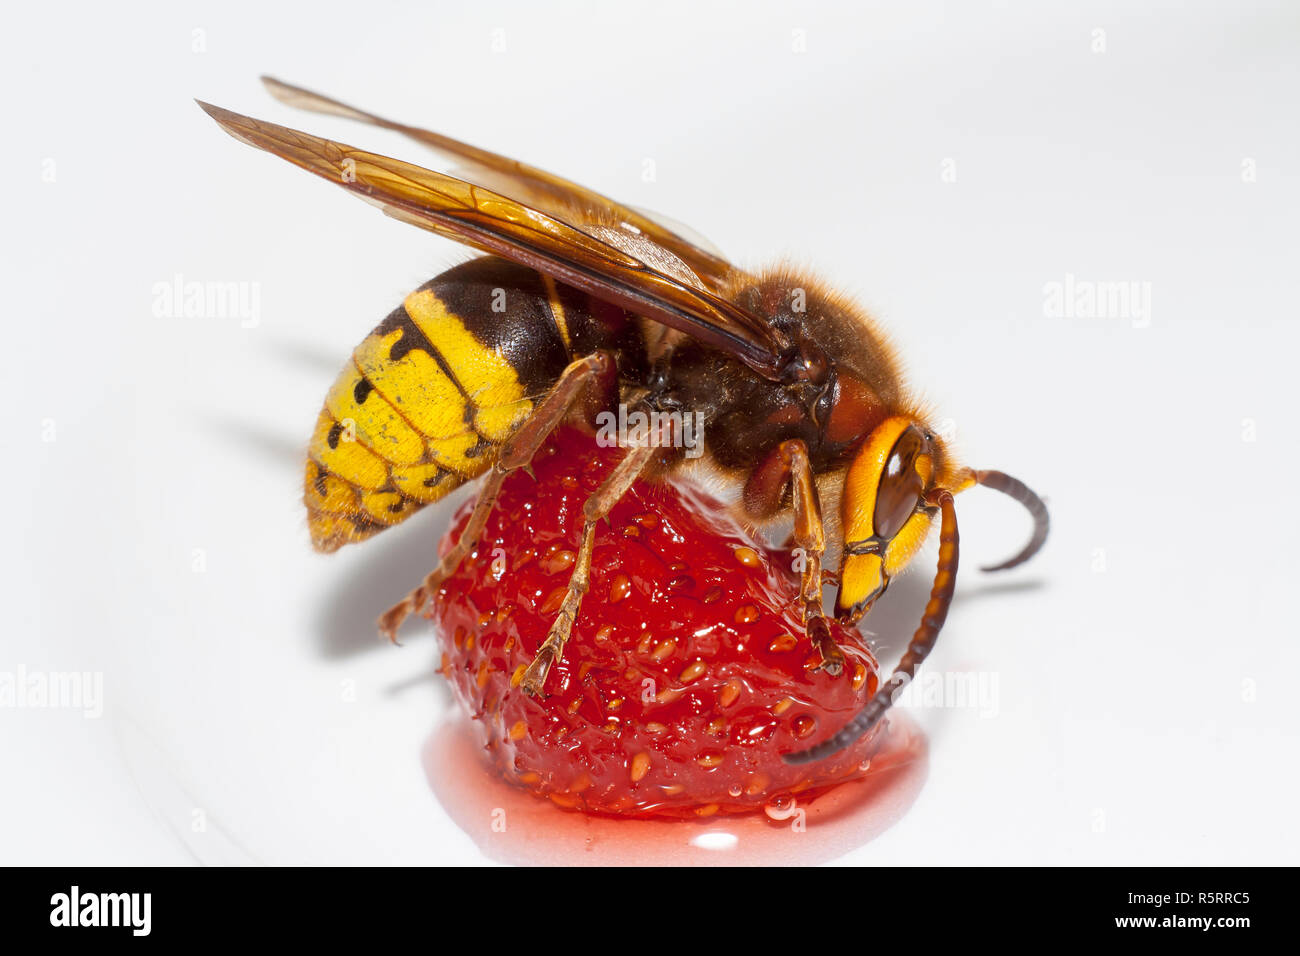 big hornet vespa mandarinia eating strawberry on white background Stock Photo